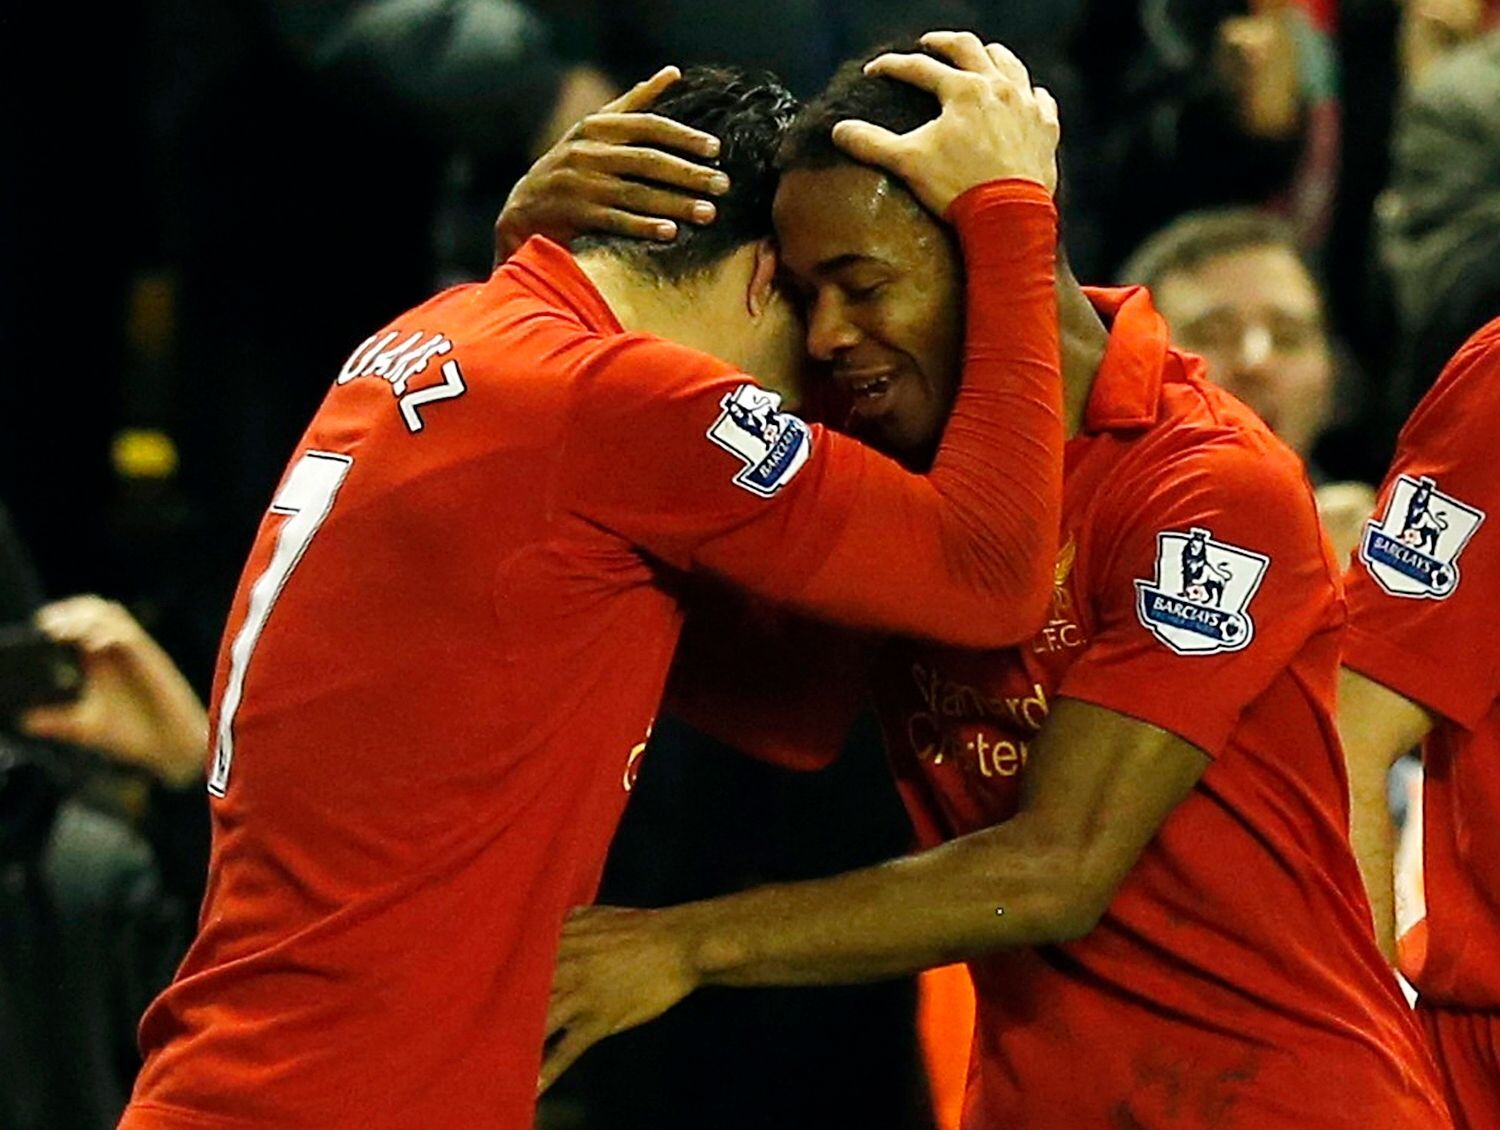 Premier League, Liverpool - Sunderland: Raheem Sterling a Luis Suarez